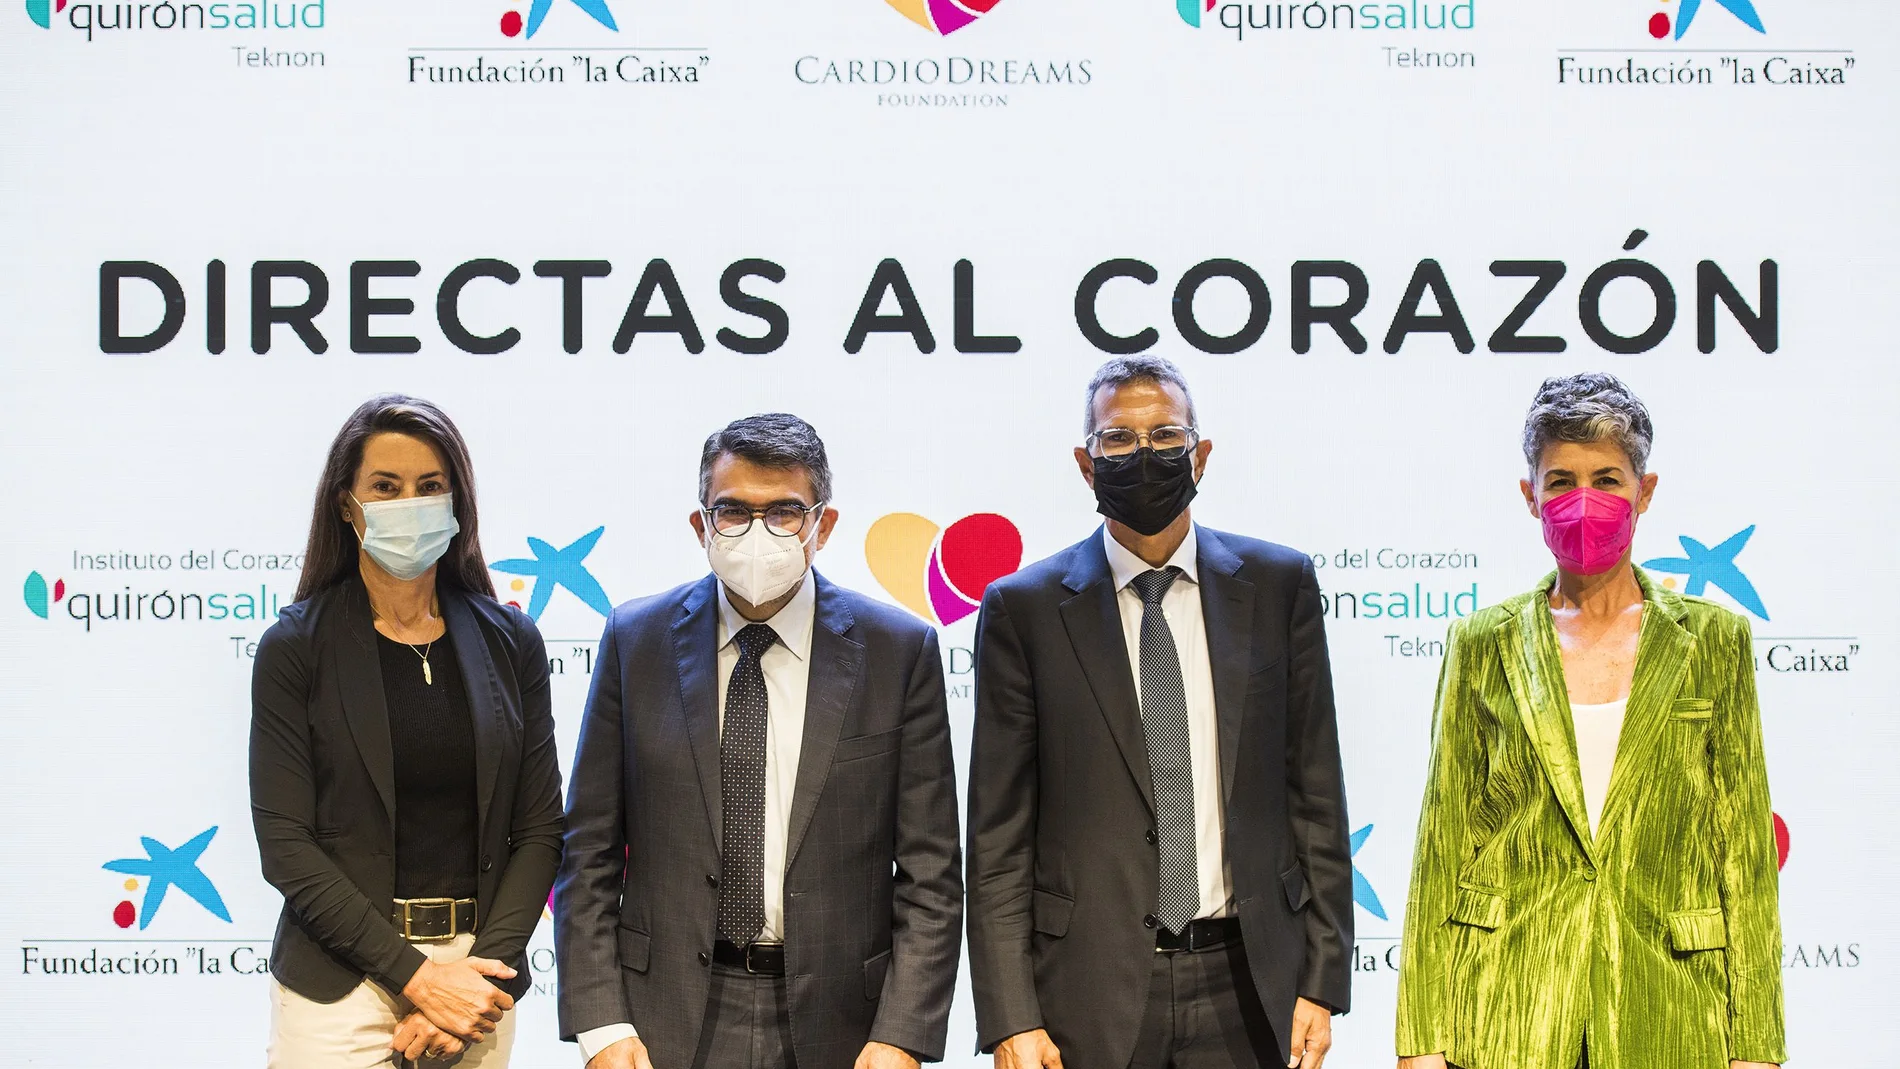 La campaña "Directas al corazón" persigue concienciar a la población del gran impacto que tienen las enfermedades cardiacas en las mujeres españolas